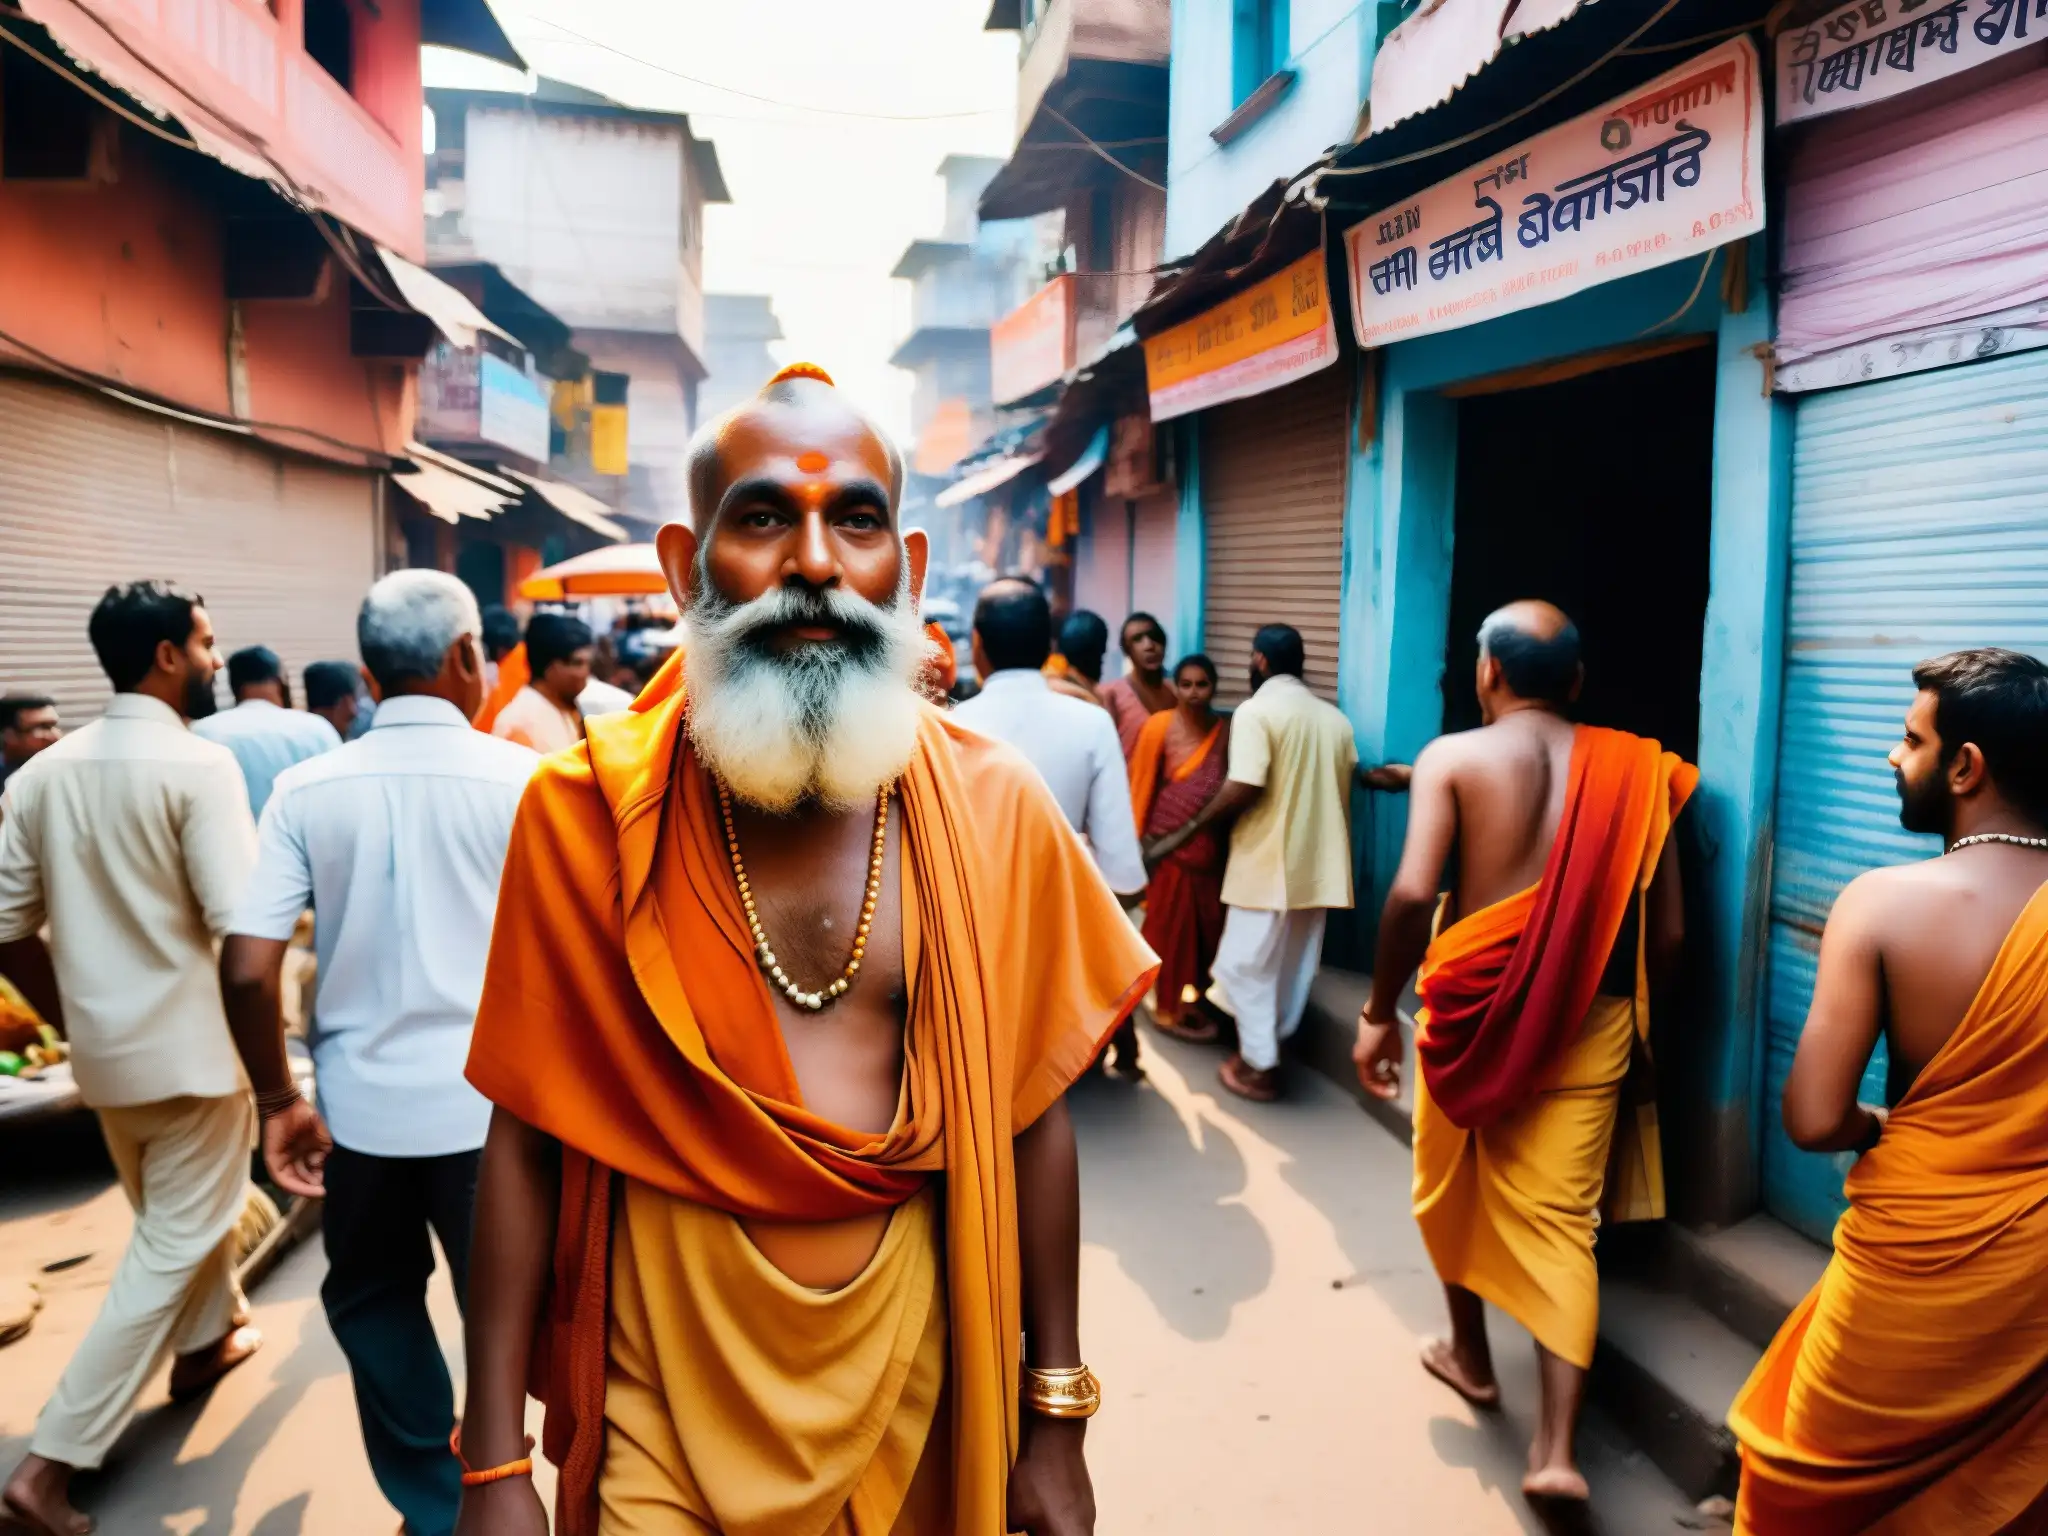 Un tranquilo Sadhu en una concurrida calle de Varanasi, India, con el Ganges de fondo